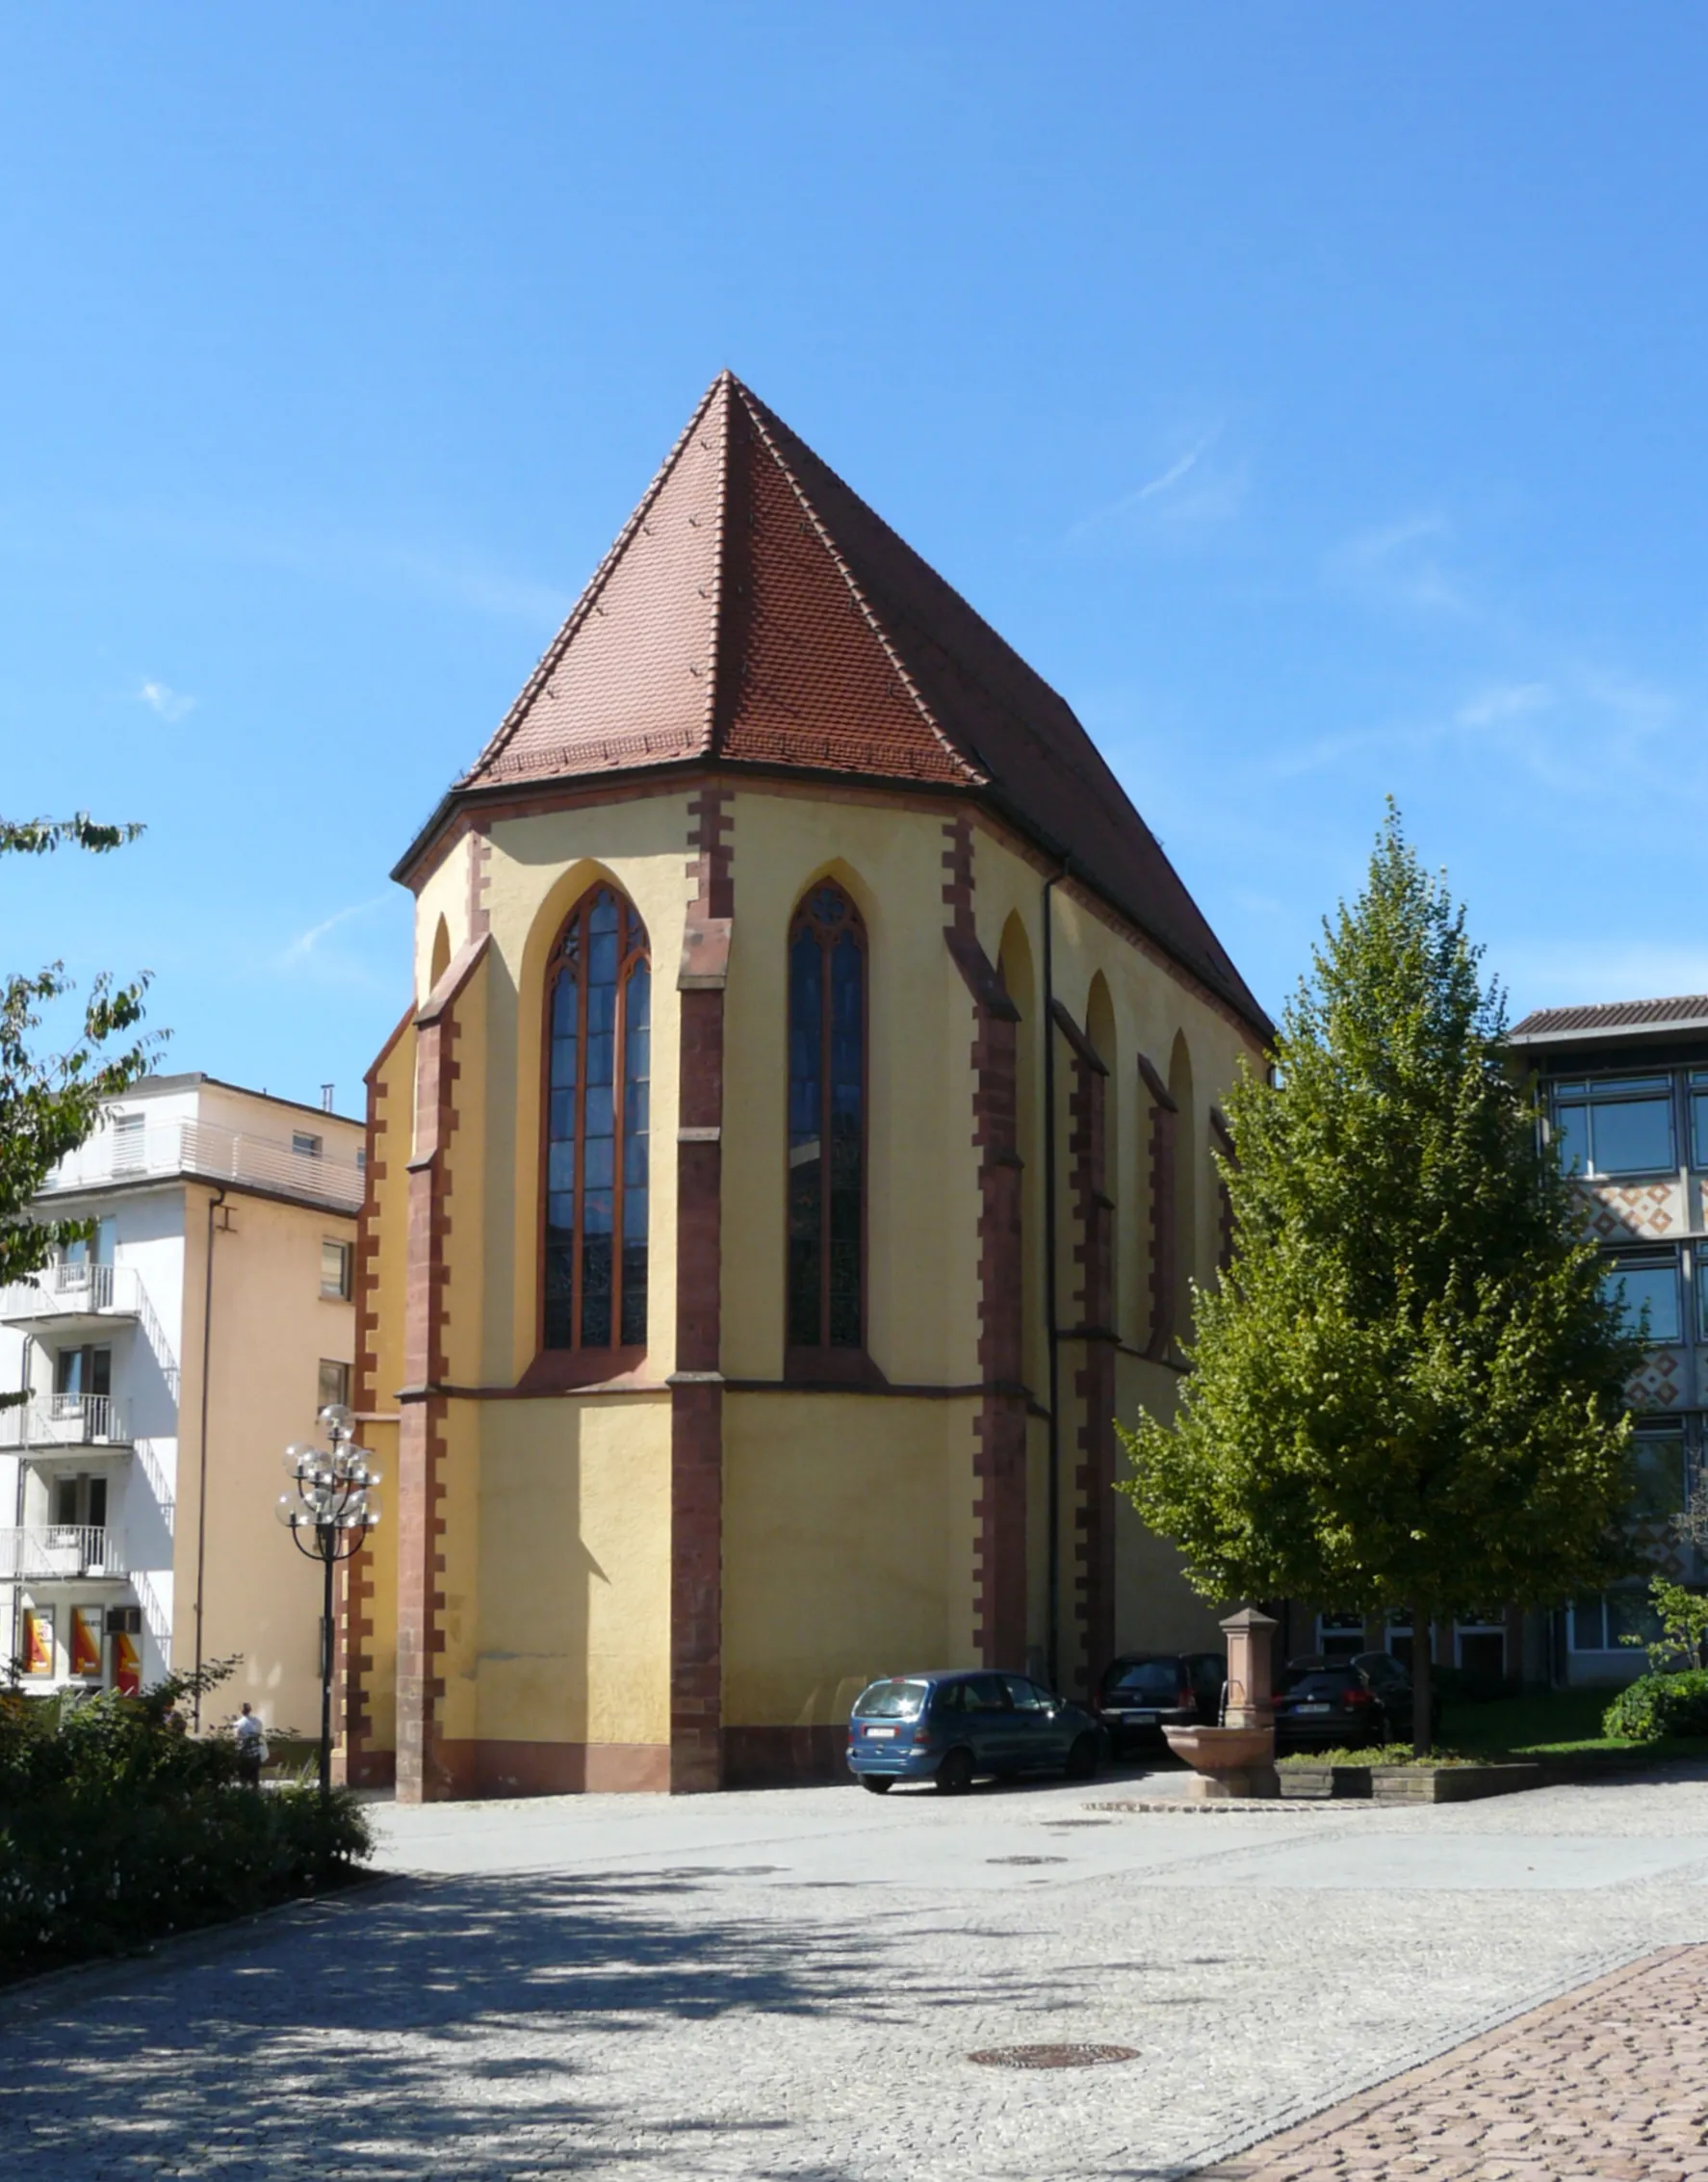 Image de Karlsruhe